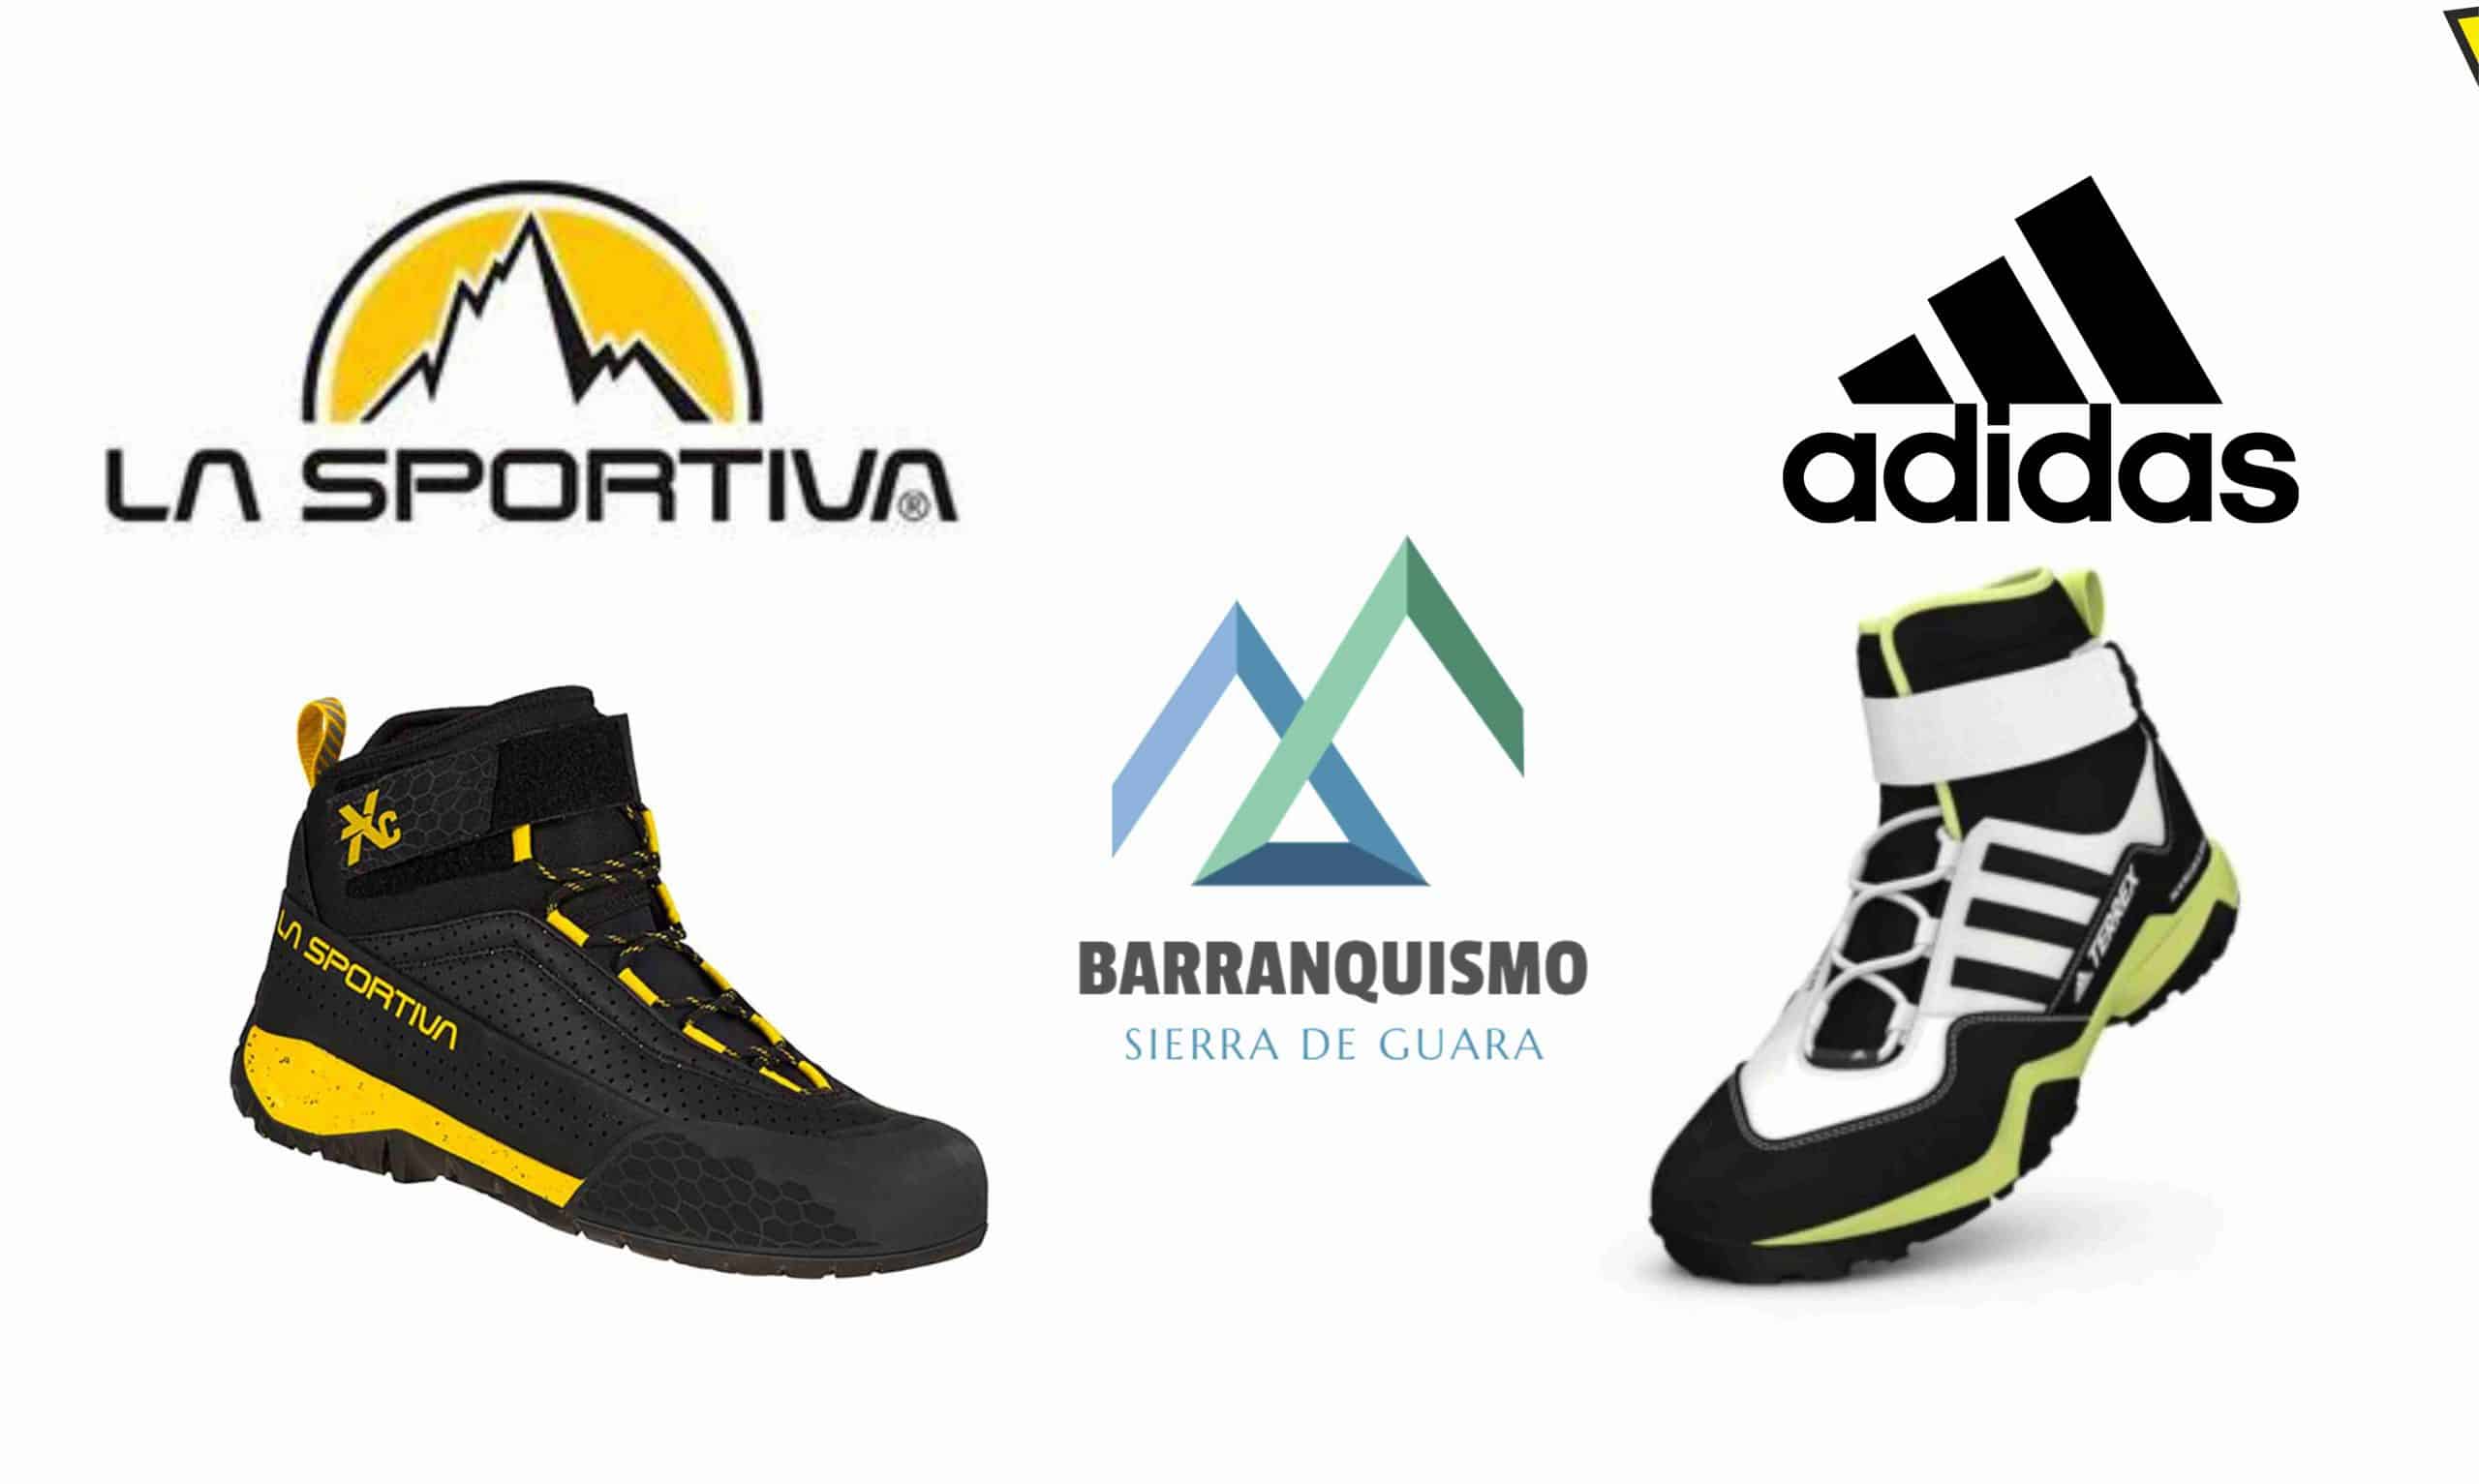 Zapatillas de Barranquismo - Comparamos las de Adidas y